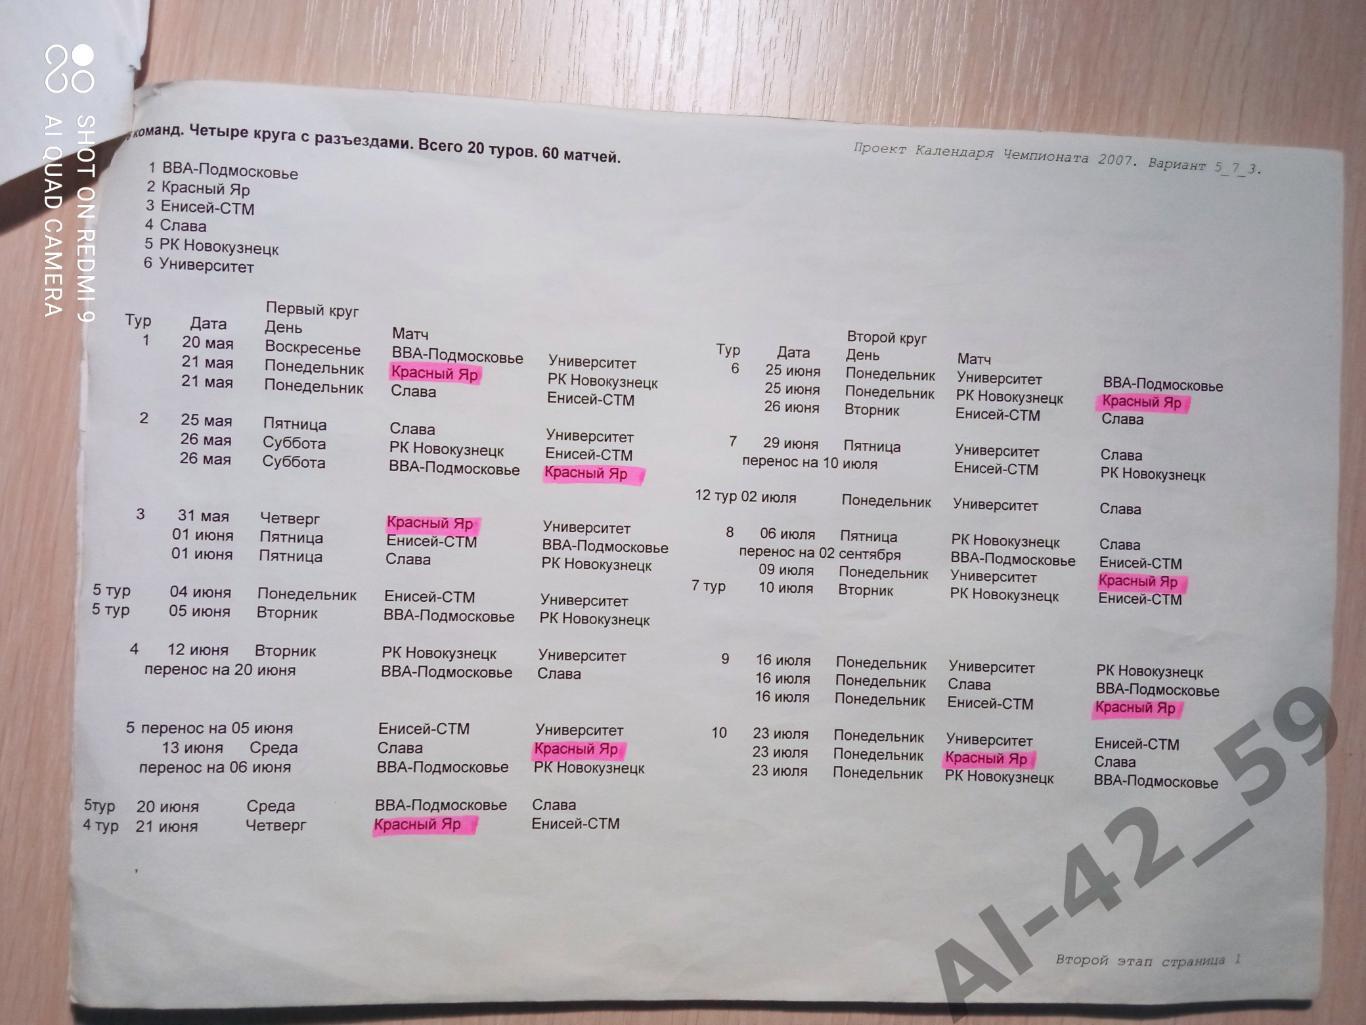 Проект календаря Чемпионата России по регби 2007г. 4